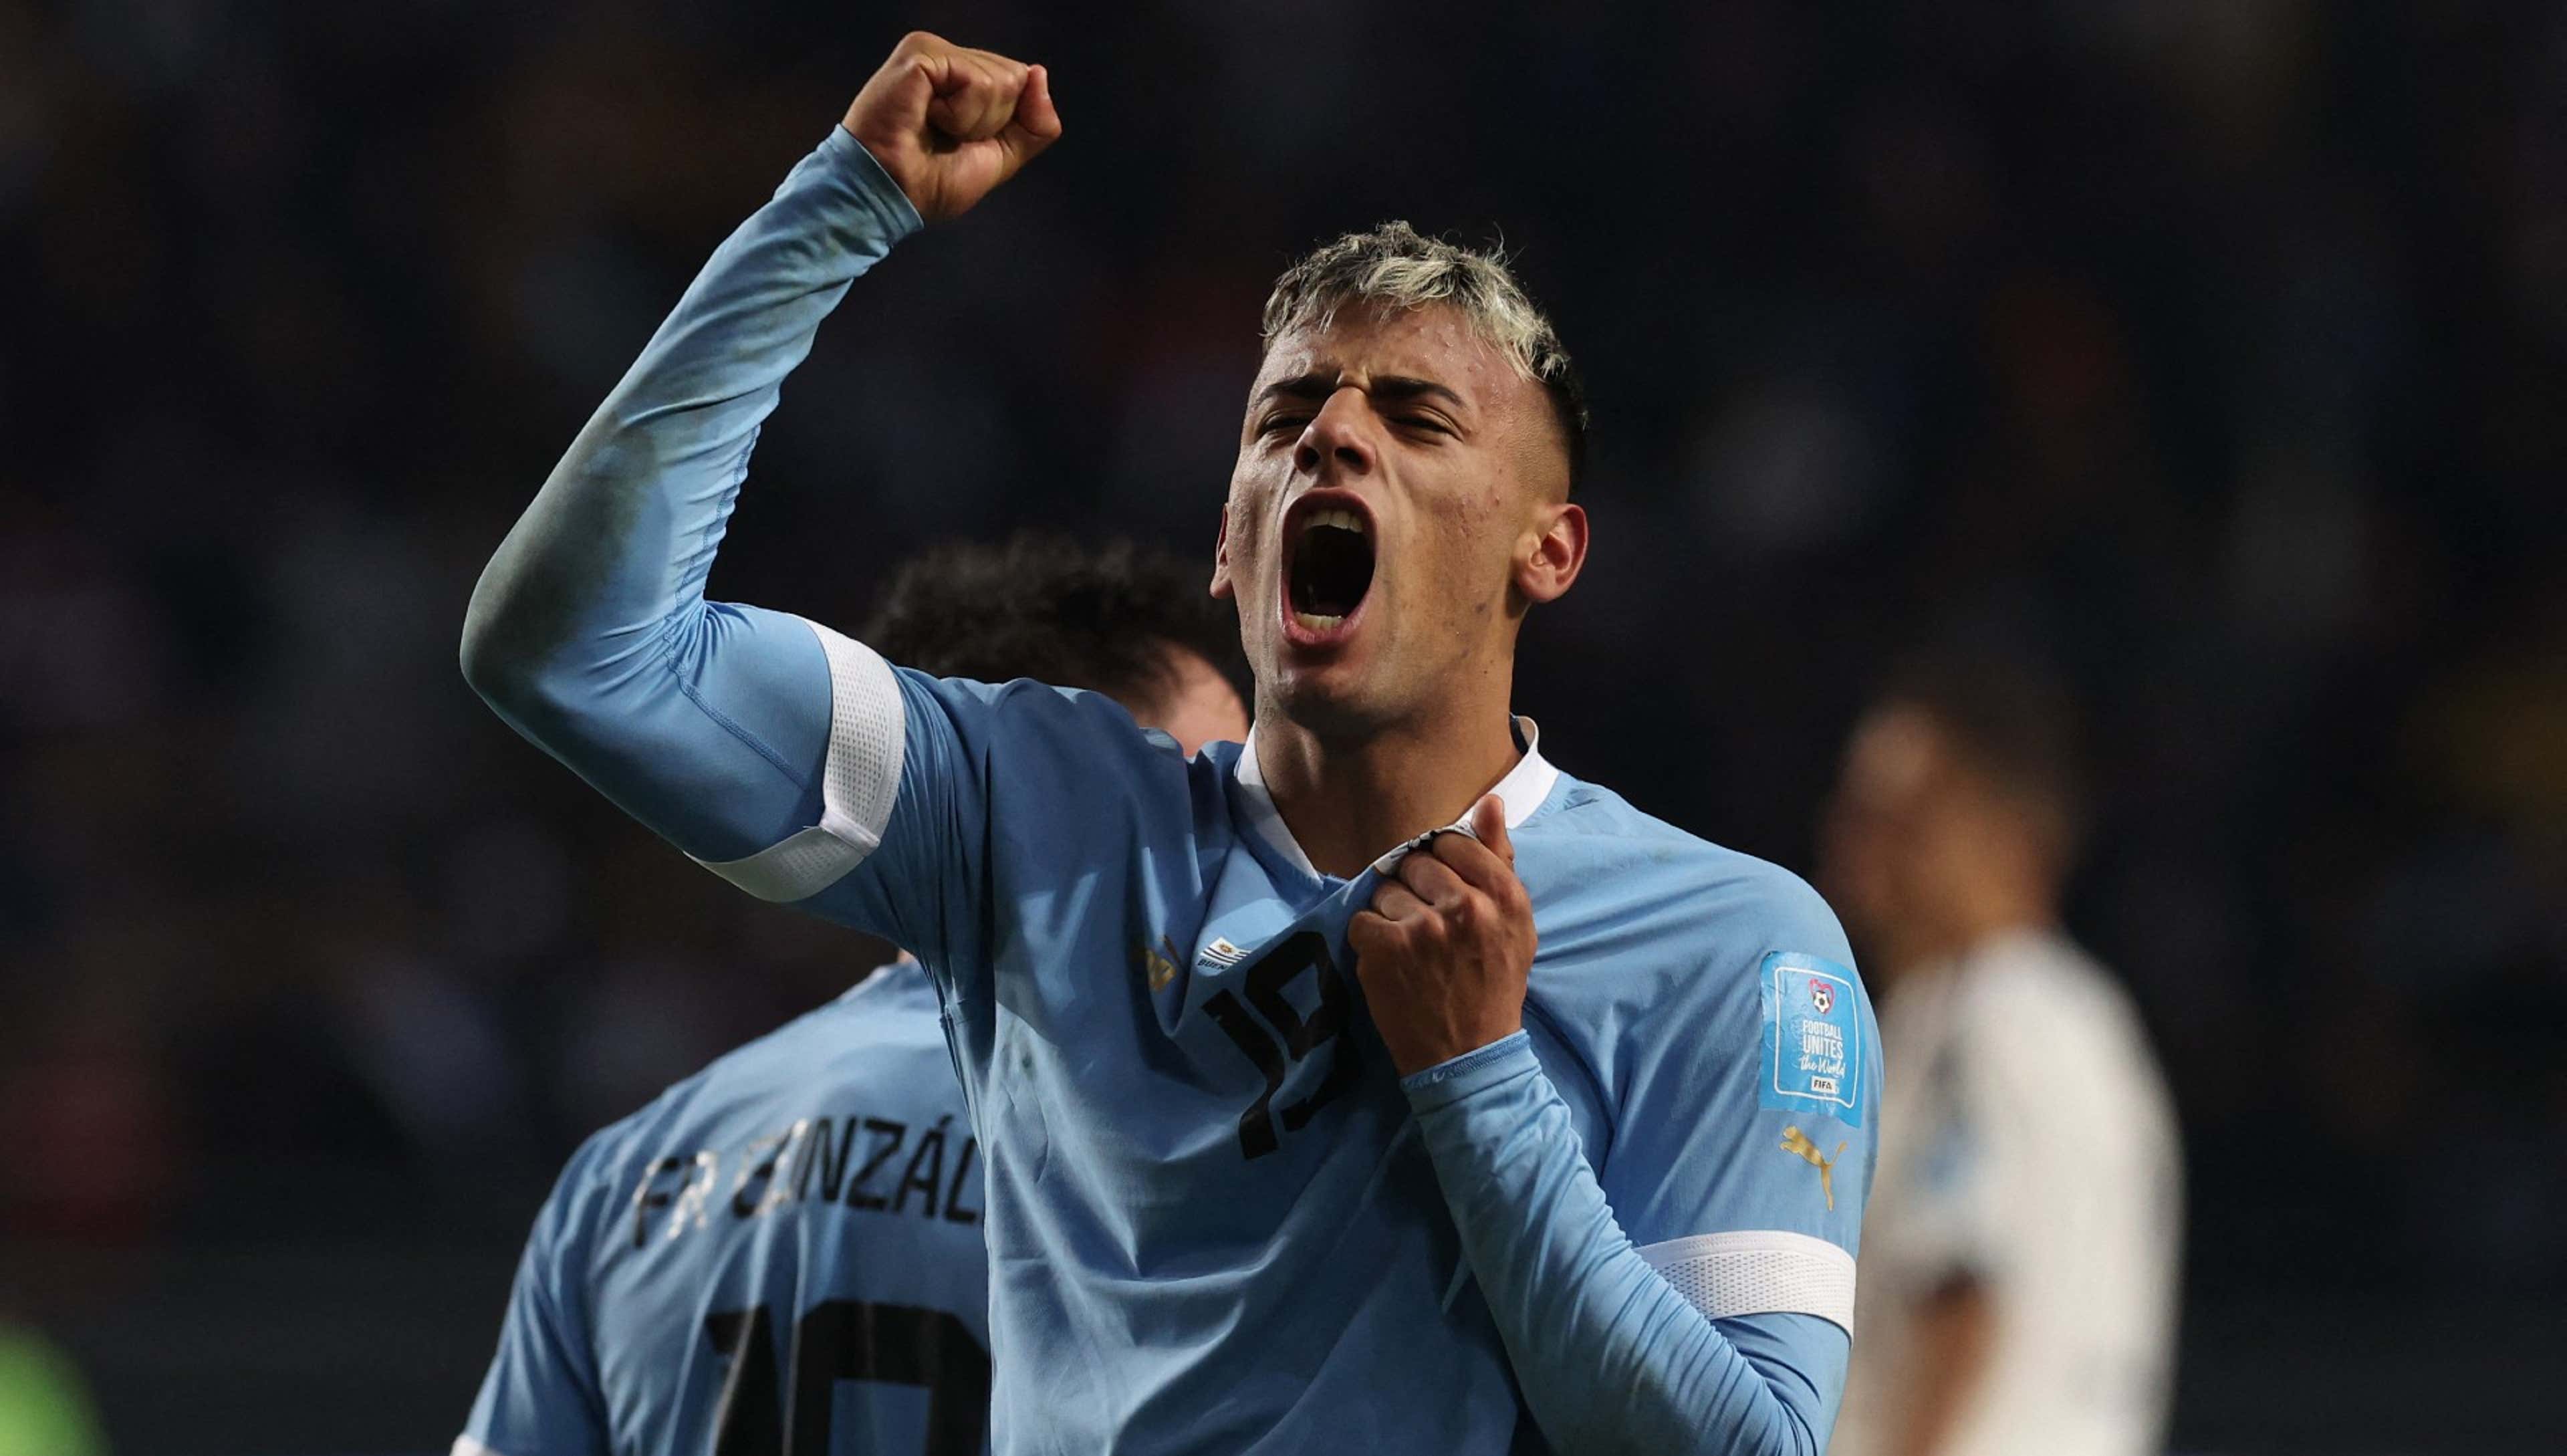 Uruguai faz história com título inédito da Copa do Mundo sub-20 - Placar -  O futebol sem barreiras para você